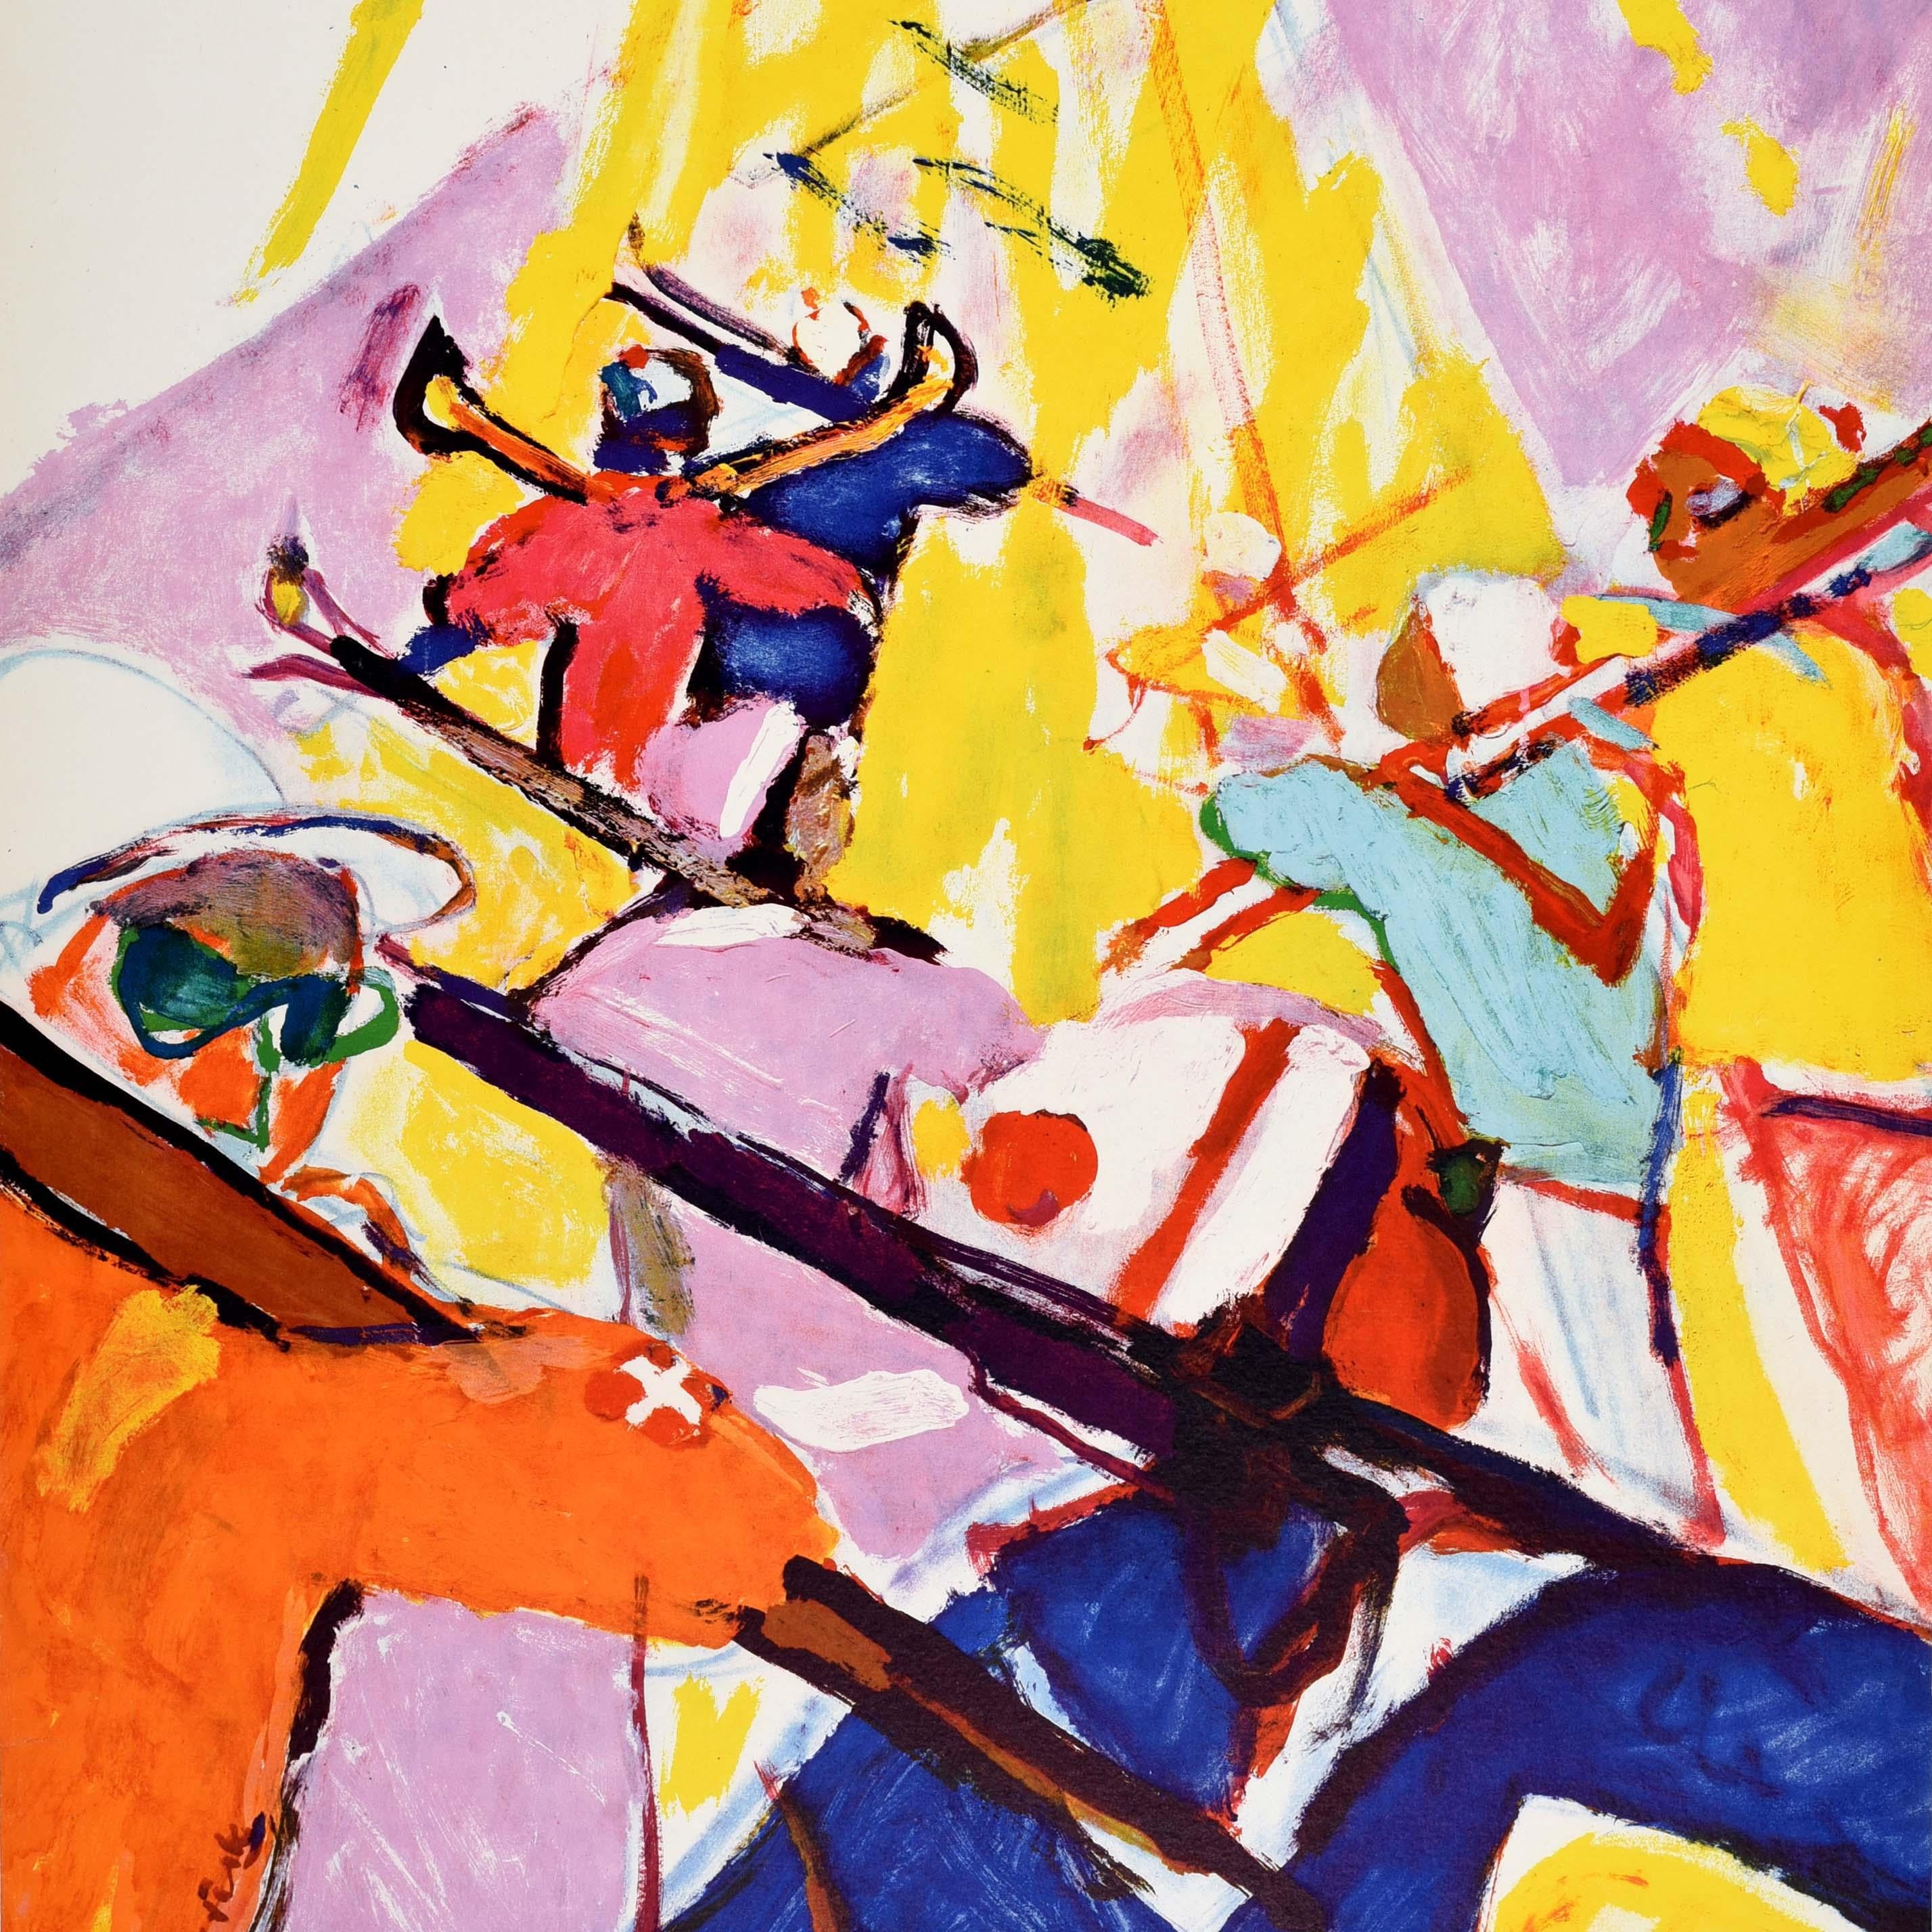 Original-Wintersport- und Skiplakat - Sport Au Soleil En Suisse / Sport In The Sun In Switzerland - mit einem farbenfrohen Kunstwerk des bekannten Künstlers Hans Falk (1918-2002), das eine Gruppe von Skifahrern zeigt, die ihre Skier beim Gehen über